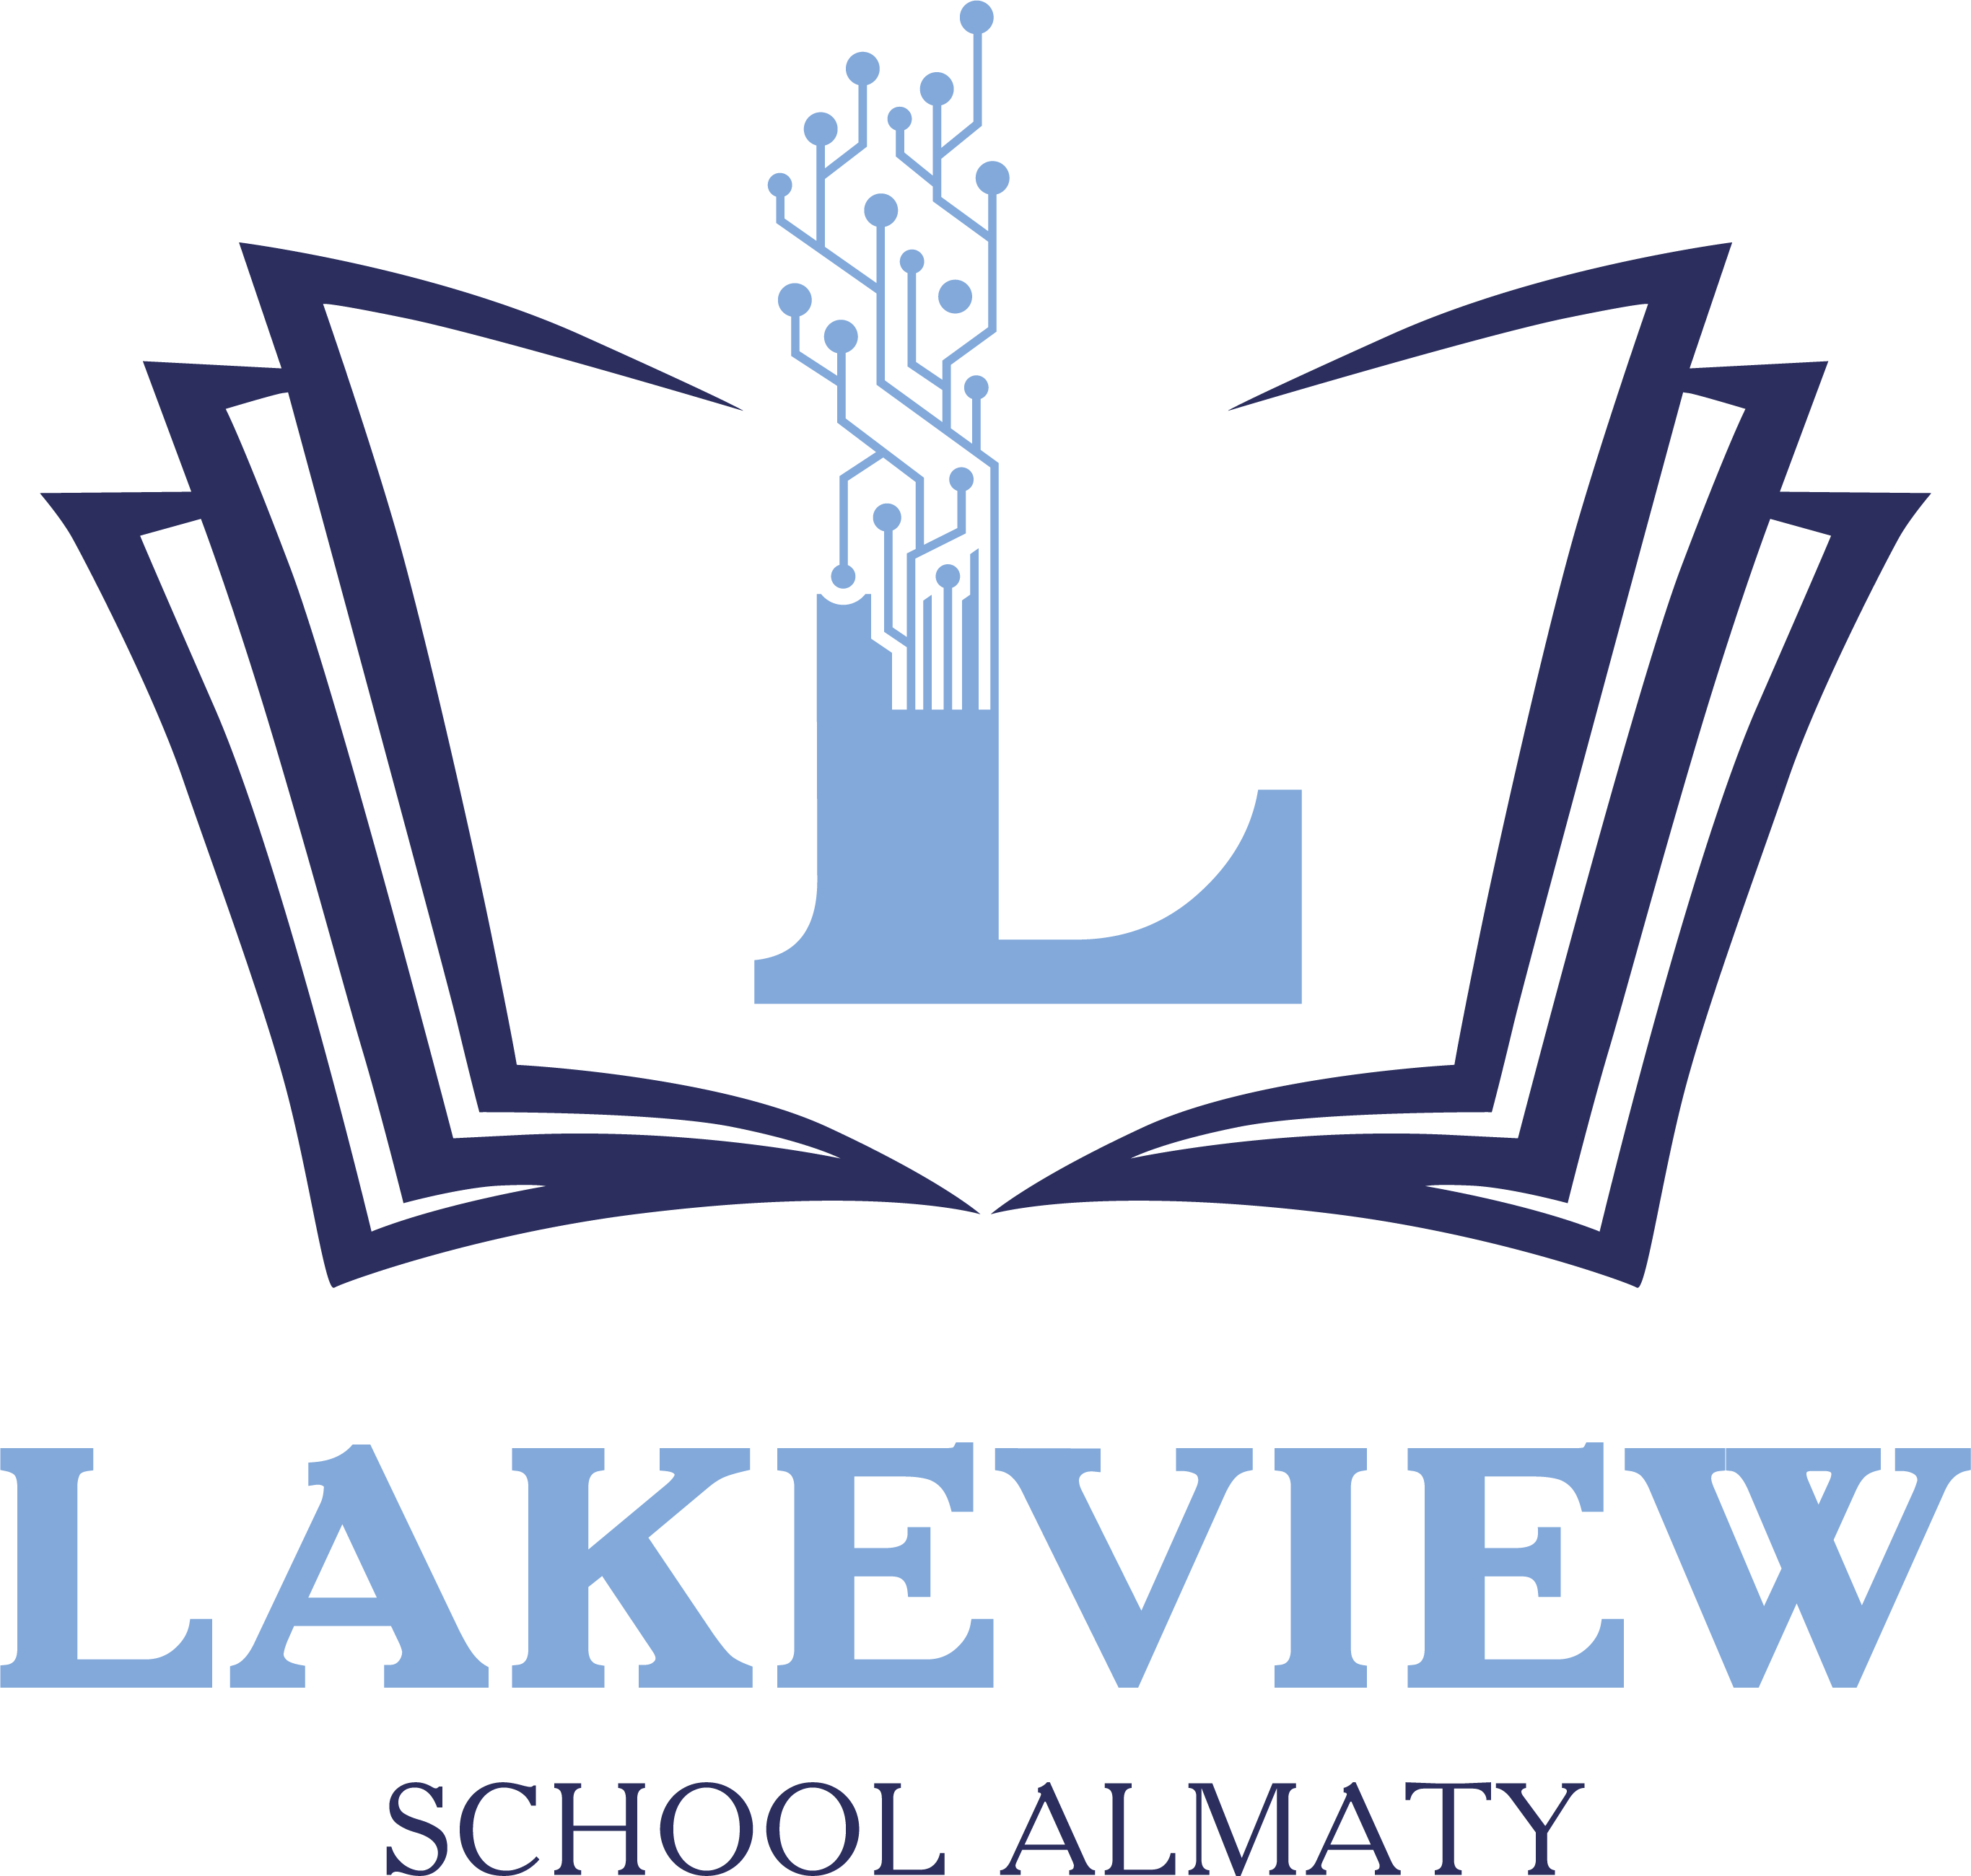 УО "Lakeview School"